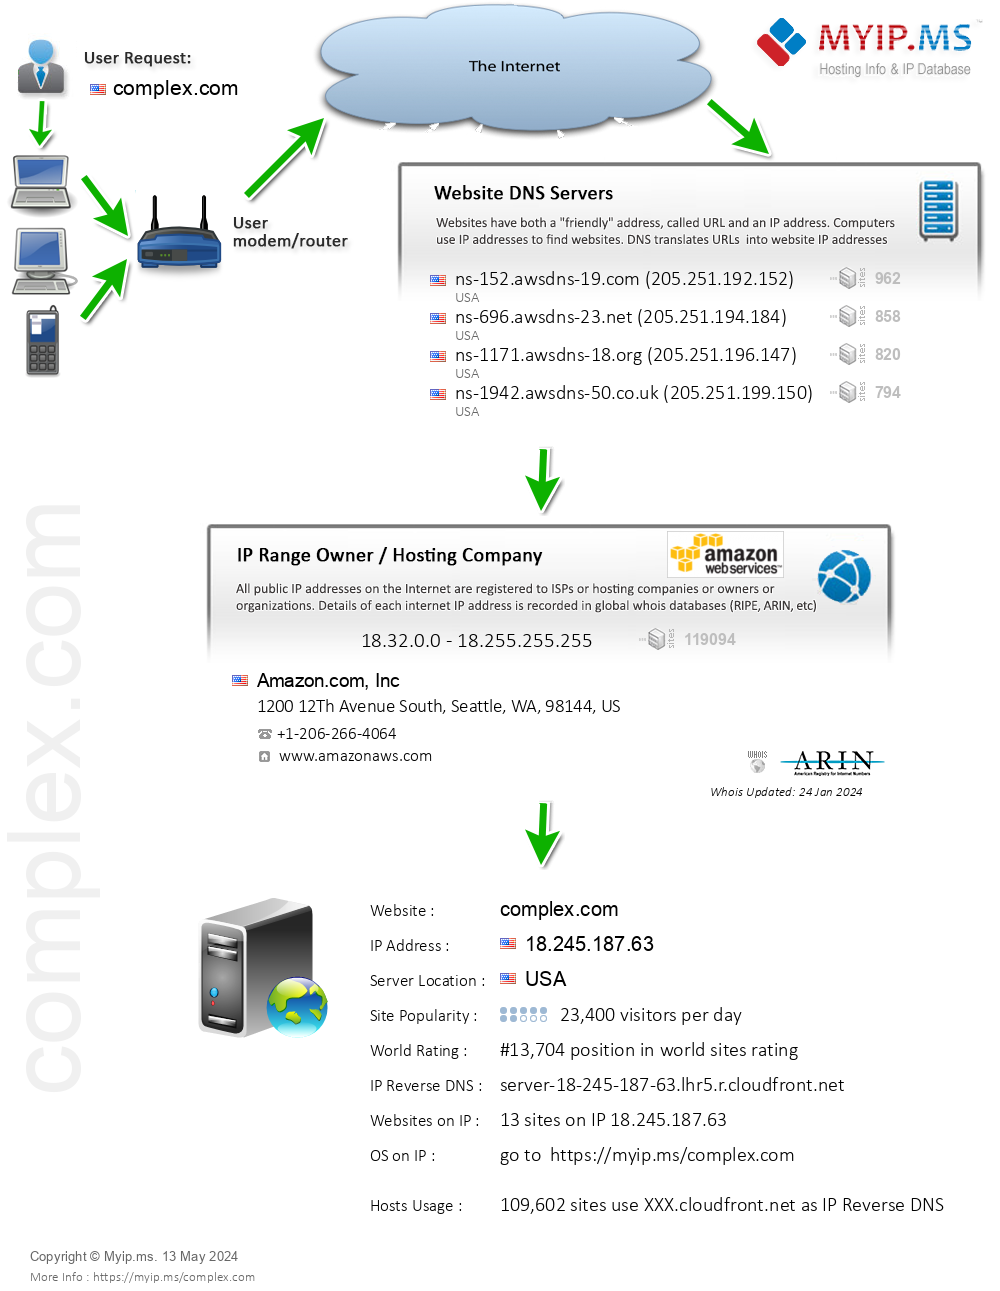 Complex.com - Website Hosting Visual IP Diagram